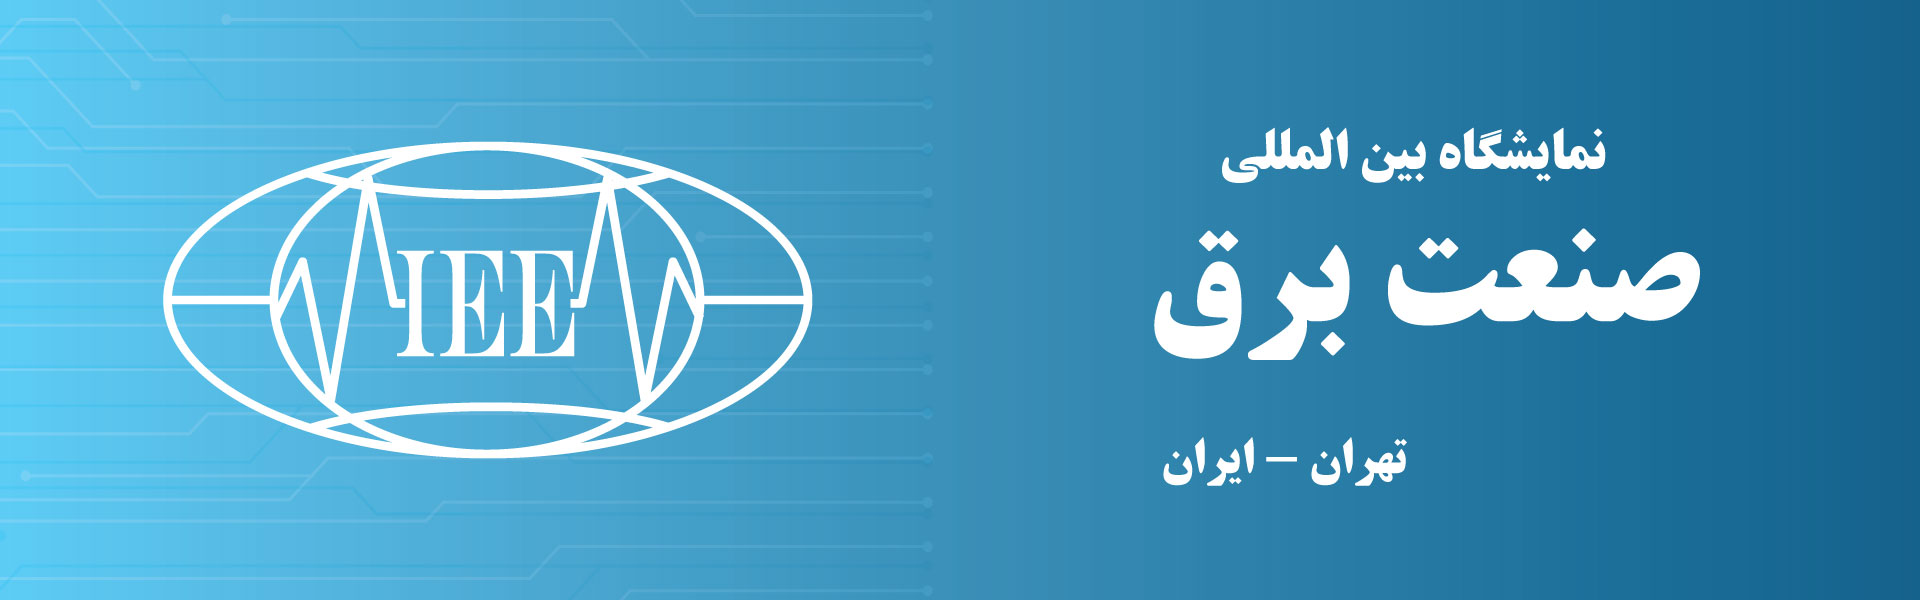 نمایشگاه بین المللی صنعت برق تهران ایران مرکز نمایشگاهی سئول